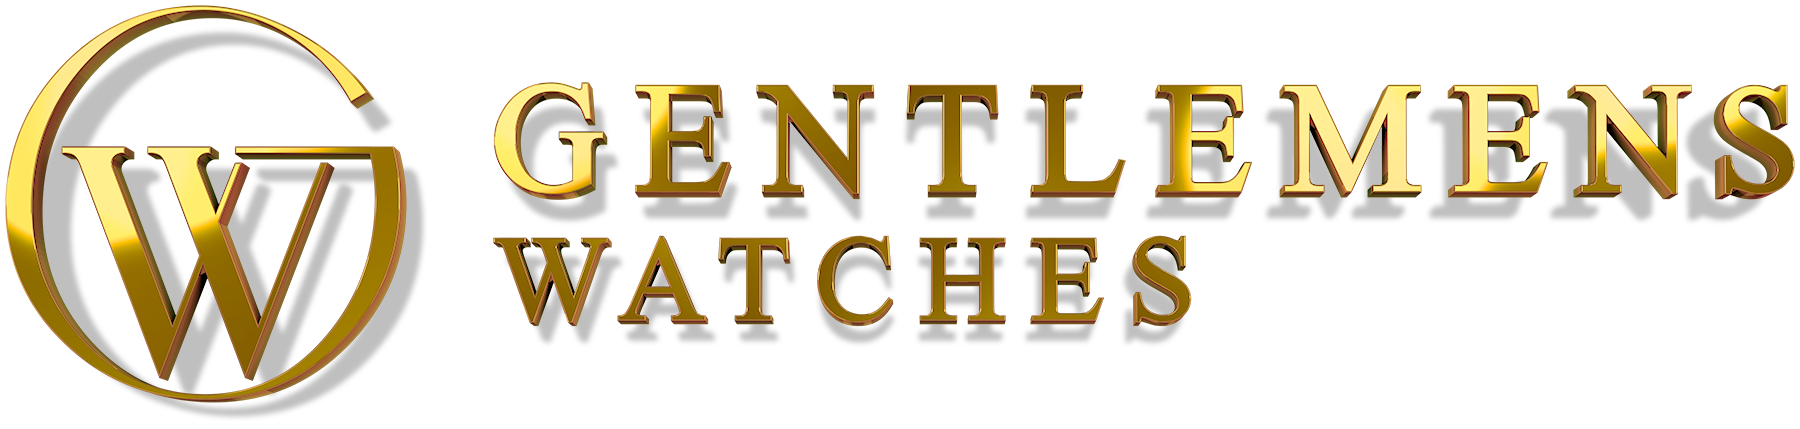 Het logo van Gentlemens Watches uitgewerkt in 3D.